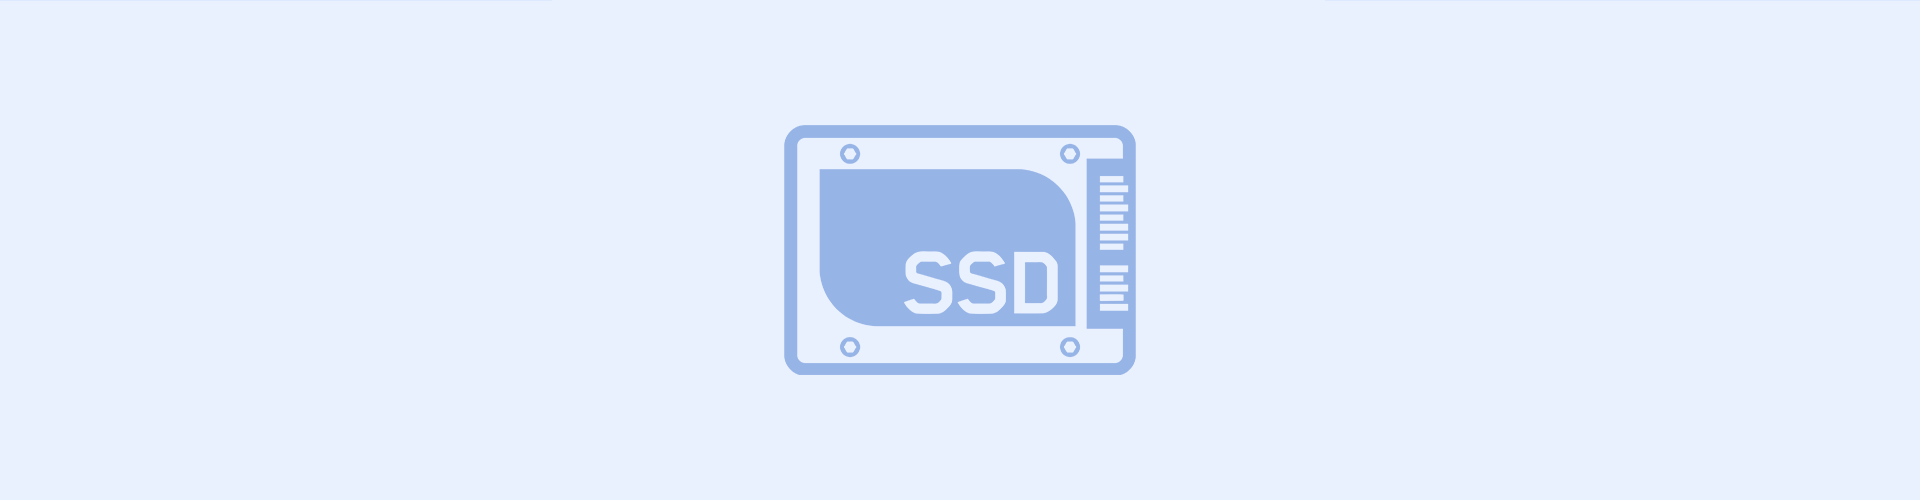 Hostarex blog: SSD Serverlər arasındakı fərq nədir?